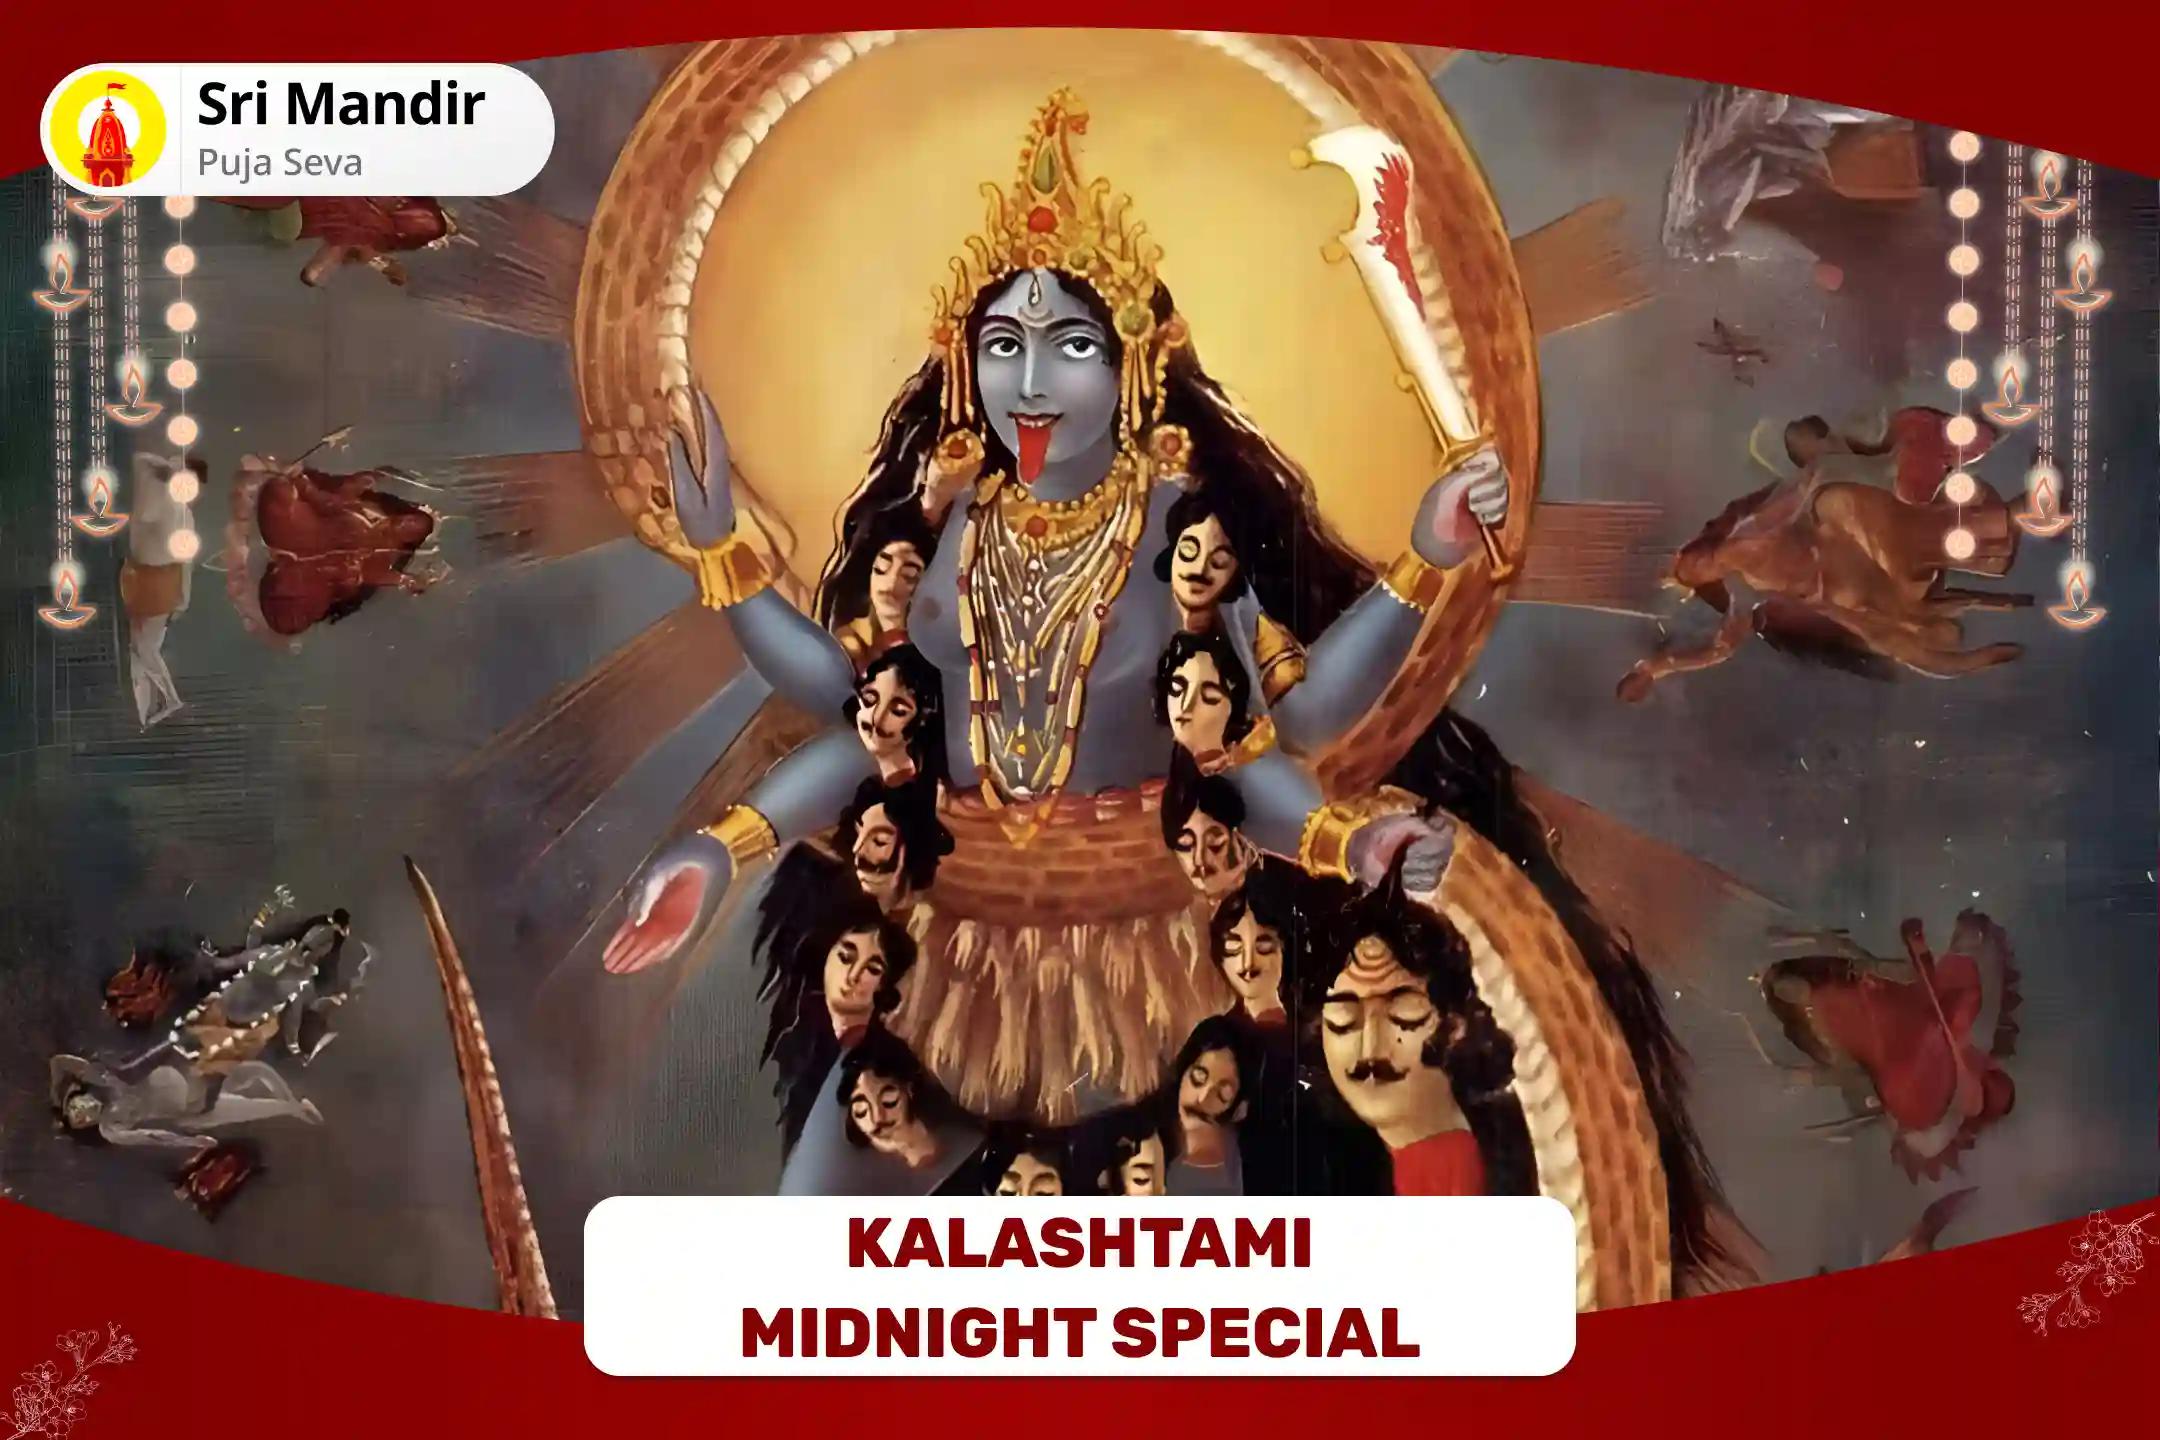 Kalashtami Midnight Special- Mahakali Tantra Yukta Mahayagya For Protection and Destruction of Negative Forces